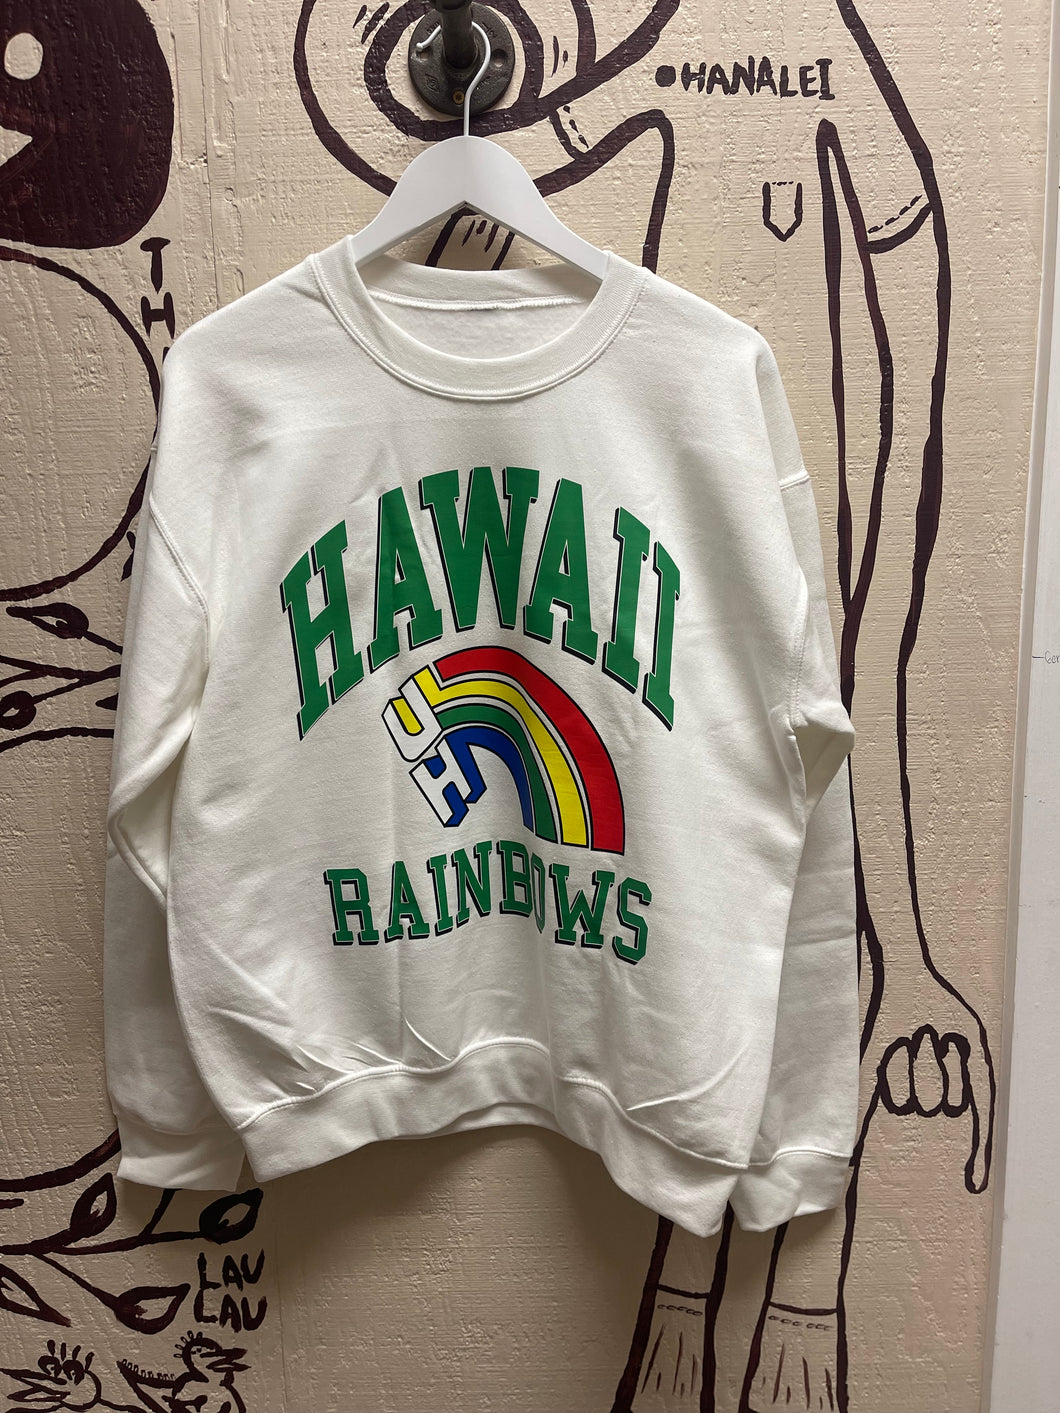 Ohanalei Vintage - “Hawaii UH Rainbow” Sweatshirt